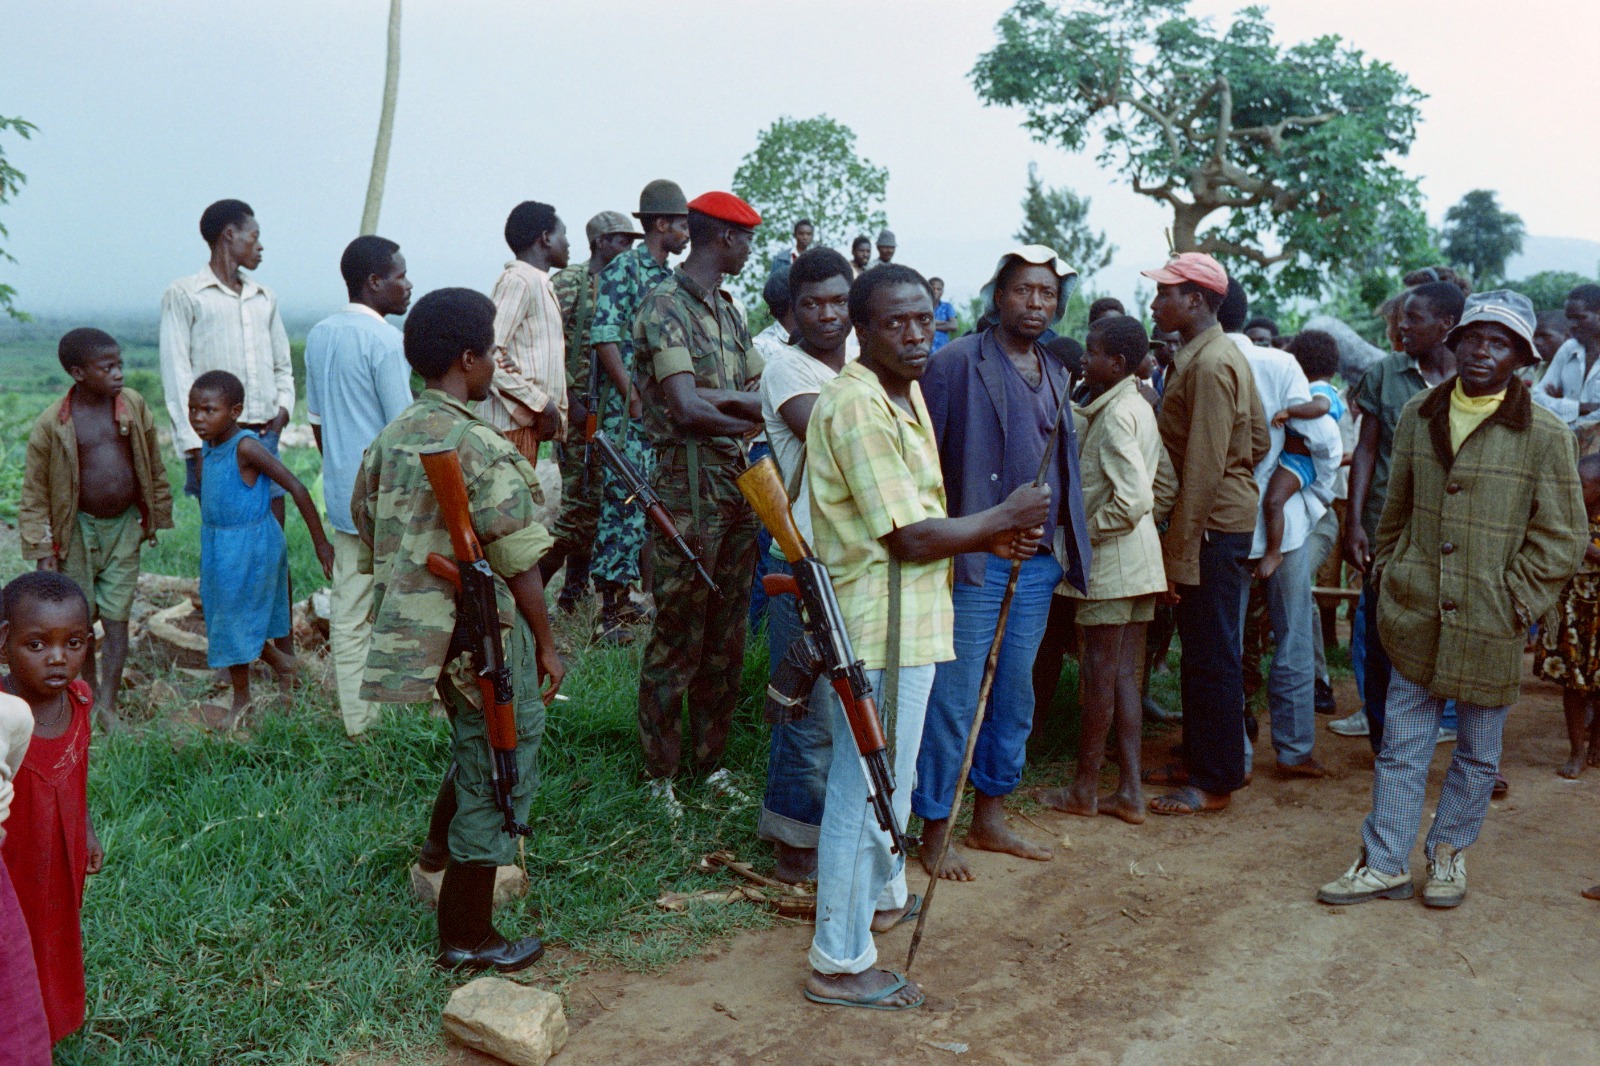 جنود ومدنيون متمردون روانديون يتجمعون بالقرب من كاجيتومبا، في شمال رواندا، مع اندلاع حرب أهلية بين القوات المسلحة الرواندية والجبهة الوطنية الرواندية، 22 أكتوبر 1990